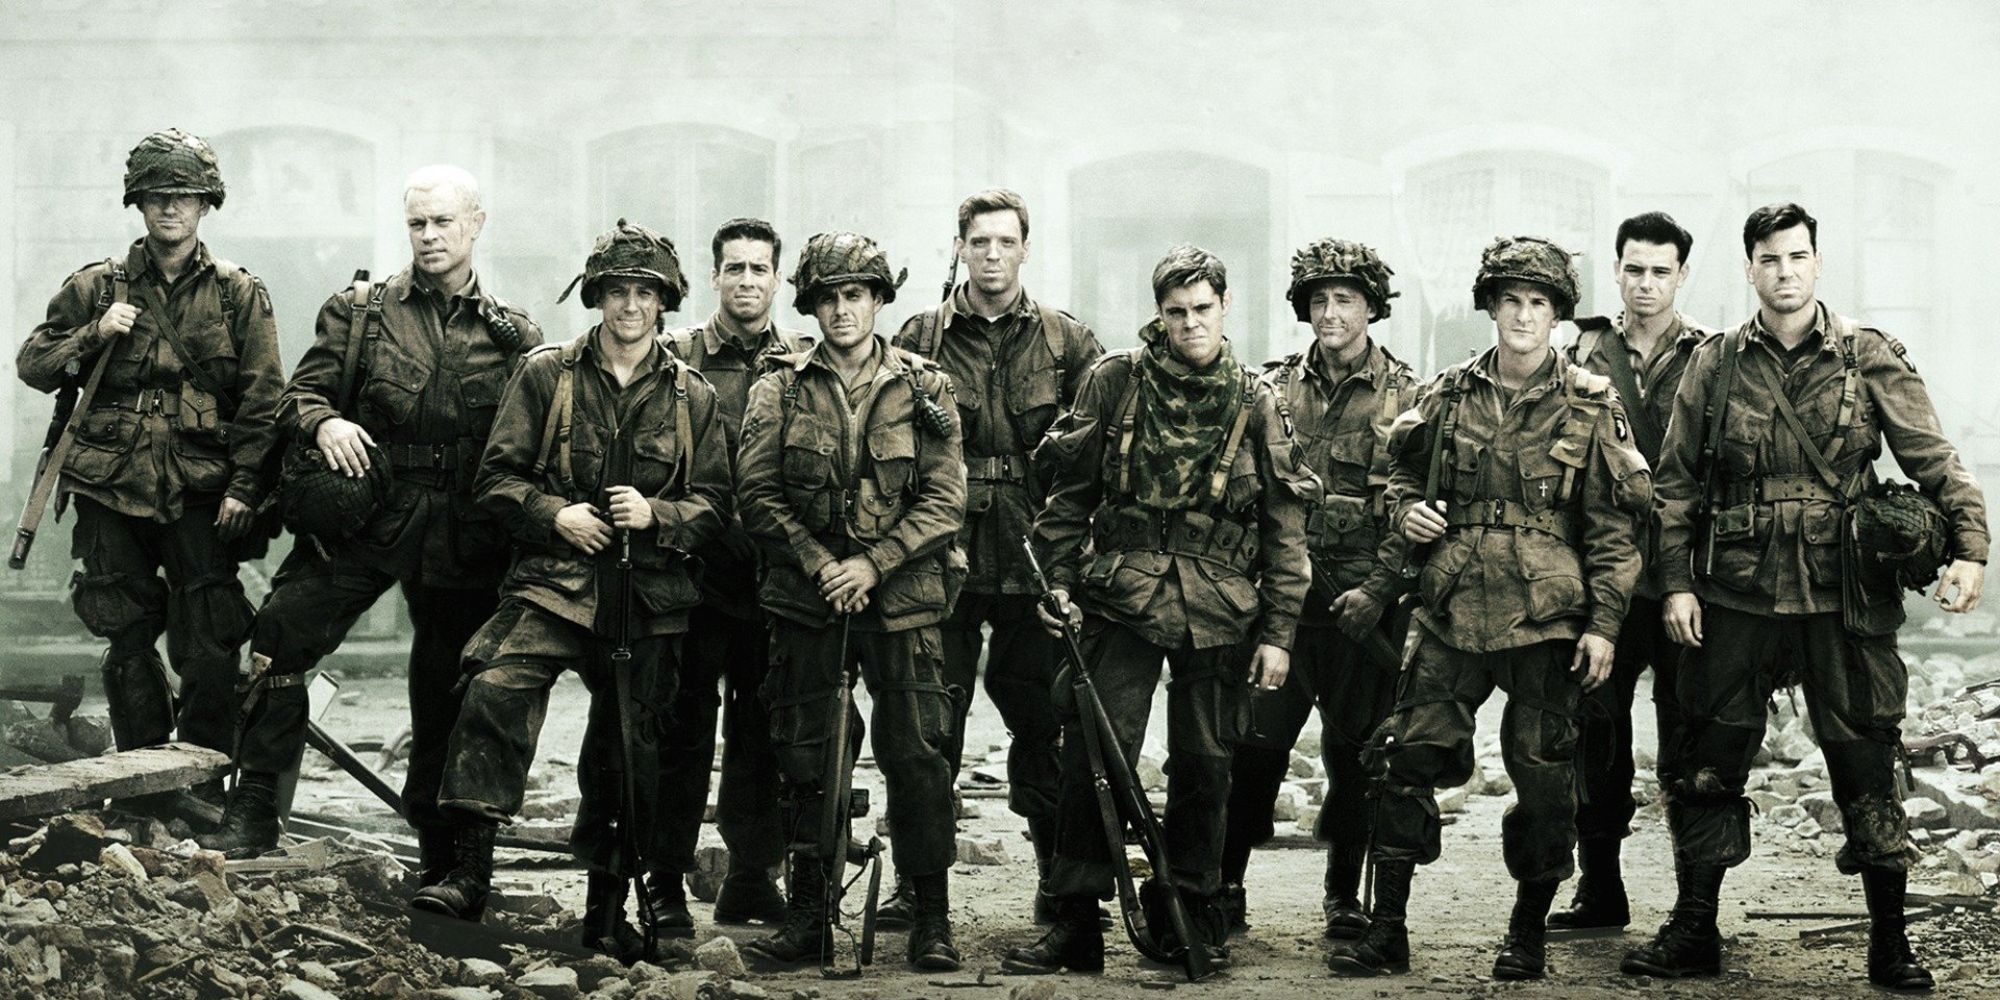 Une bande de soldats posant pour une photo dans la mini-série Band Of Brothers de HBO.